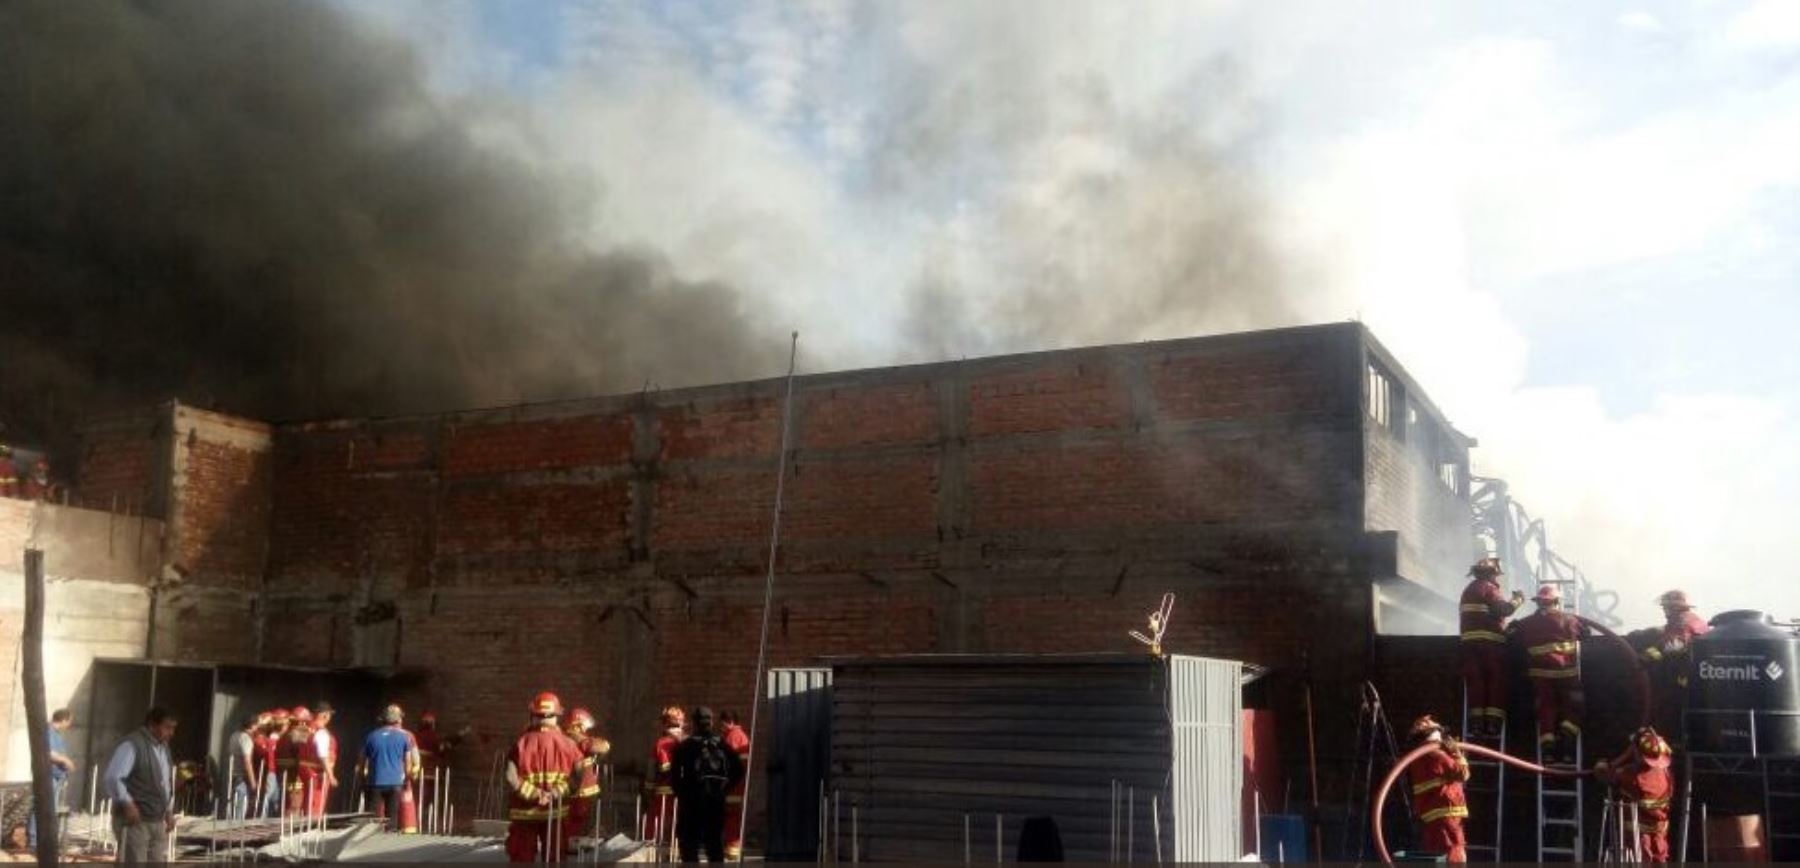 Galería donde ocurrió el incendio no contaba con licencia, afirman autoridades de Arequipa.Foto:  ANDINA/Difusión.